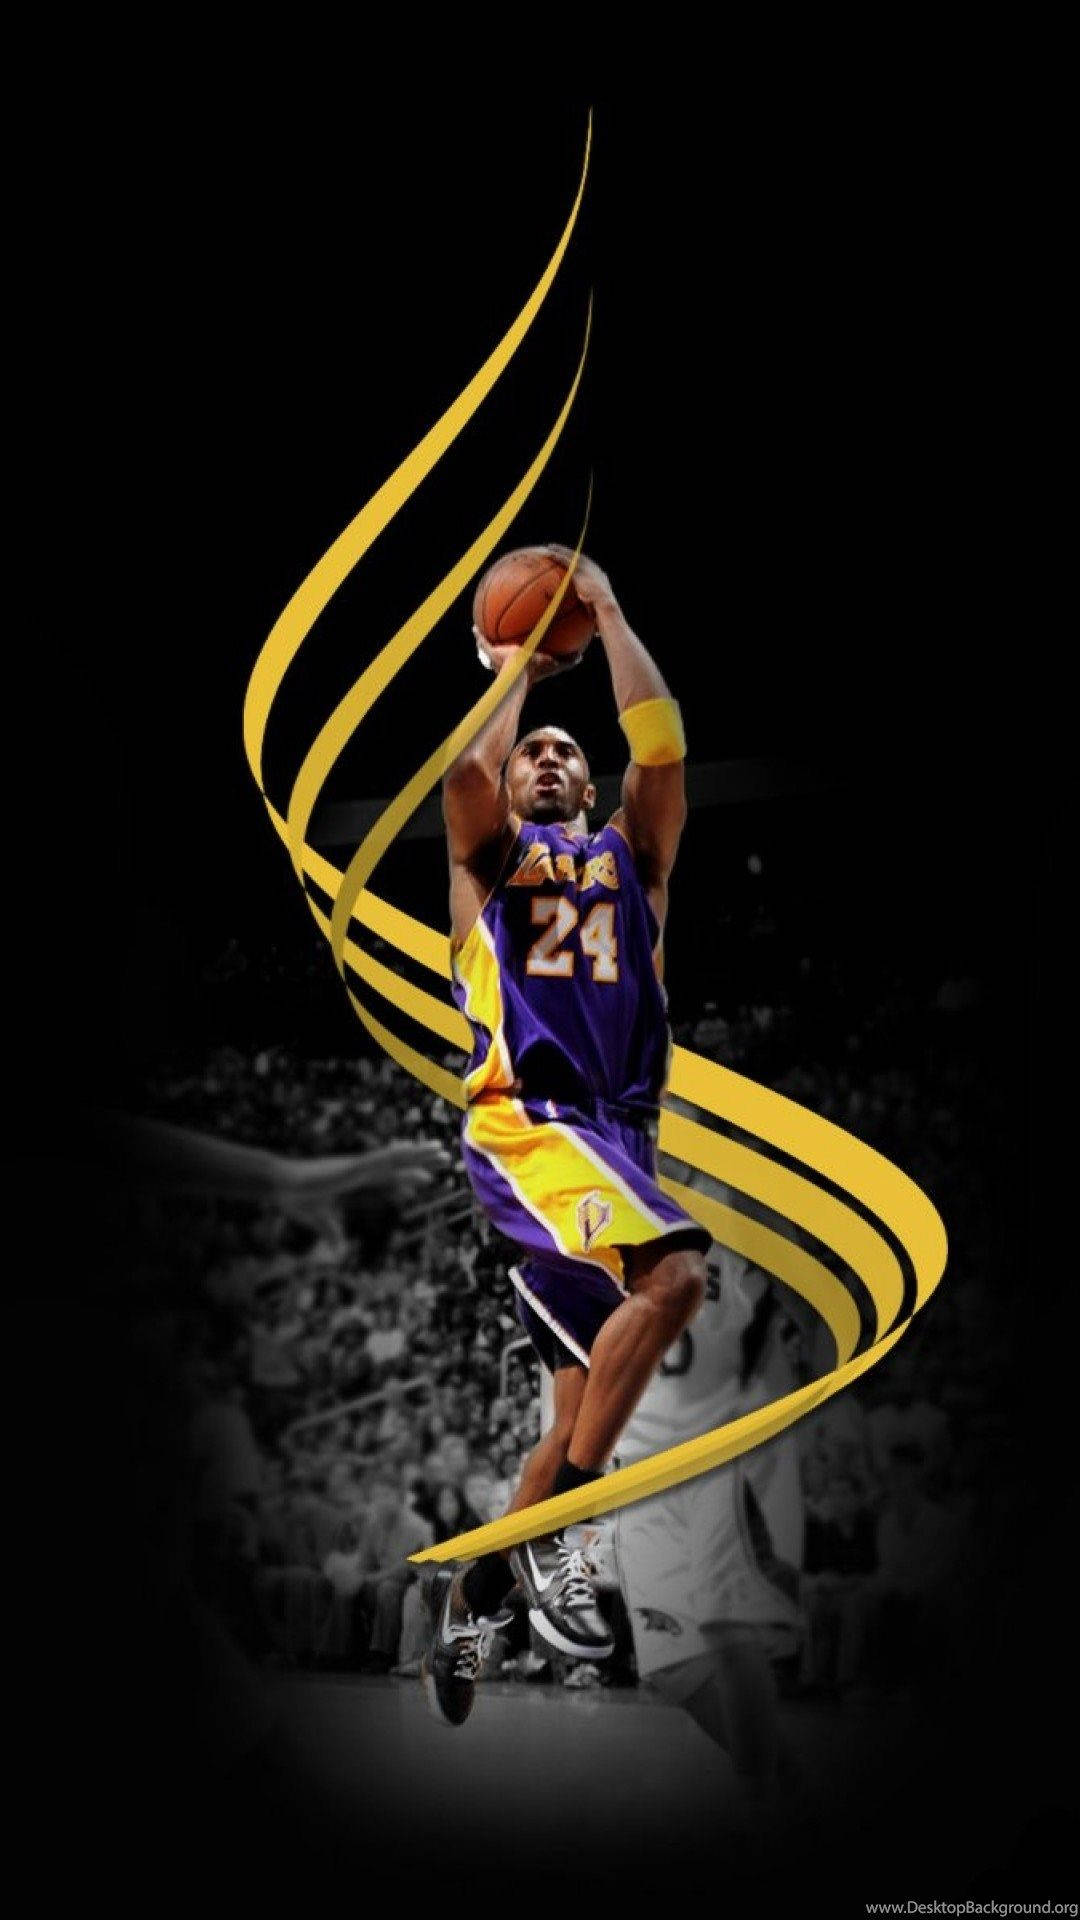 Zeigensie Ihre Unterstützung Für Ihr Lieblings-nba-team - Die Lakers - Mit Diesem Einzigartigen Lakers Iphone Wallpaper